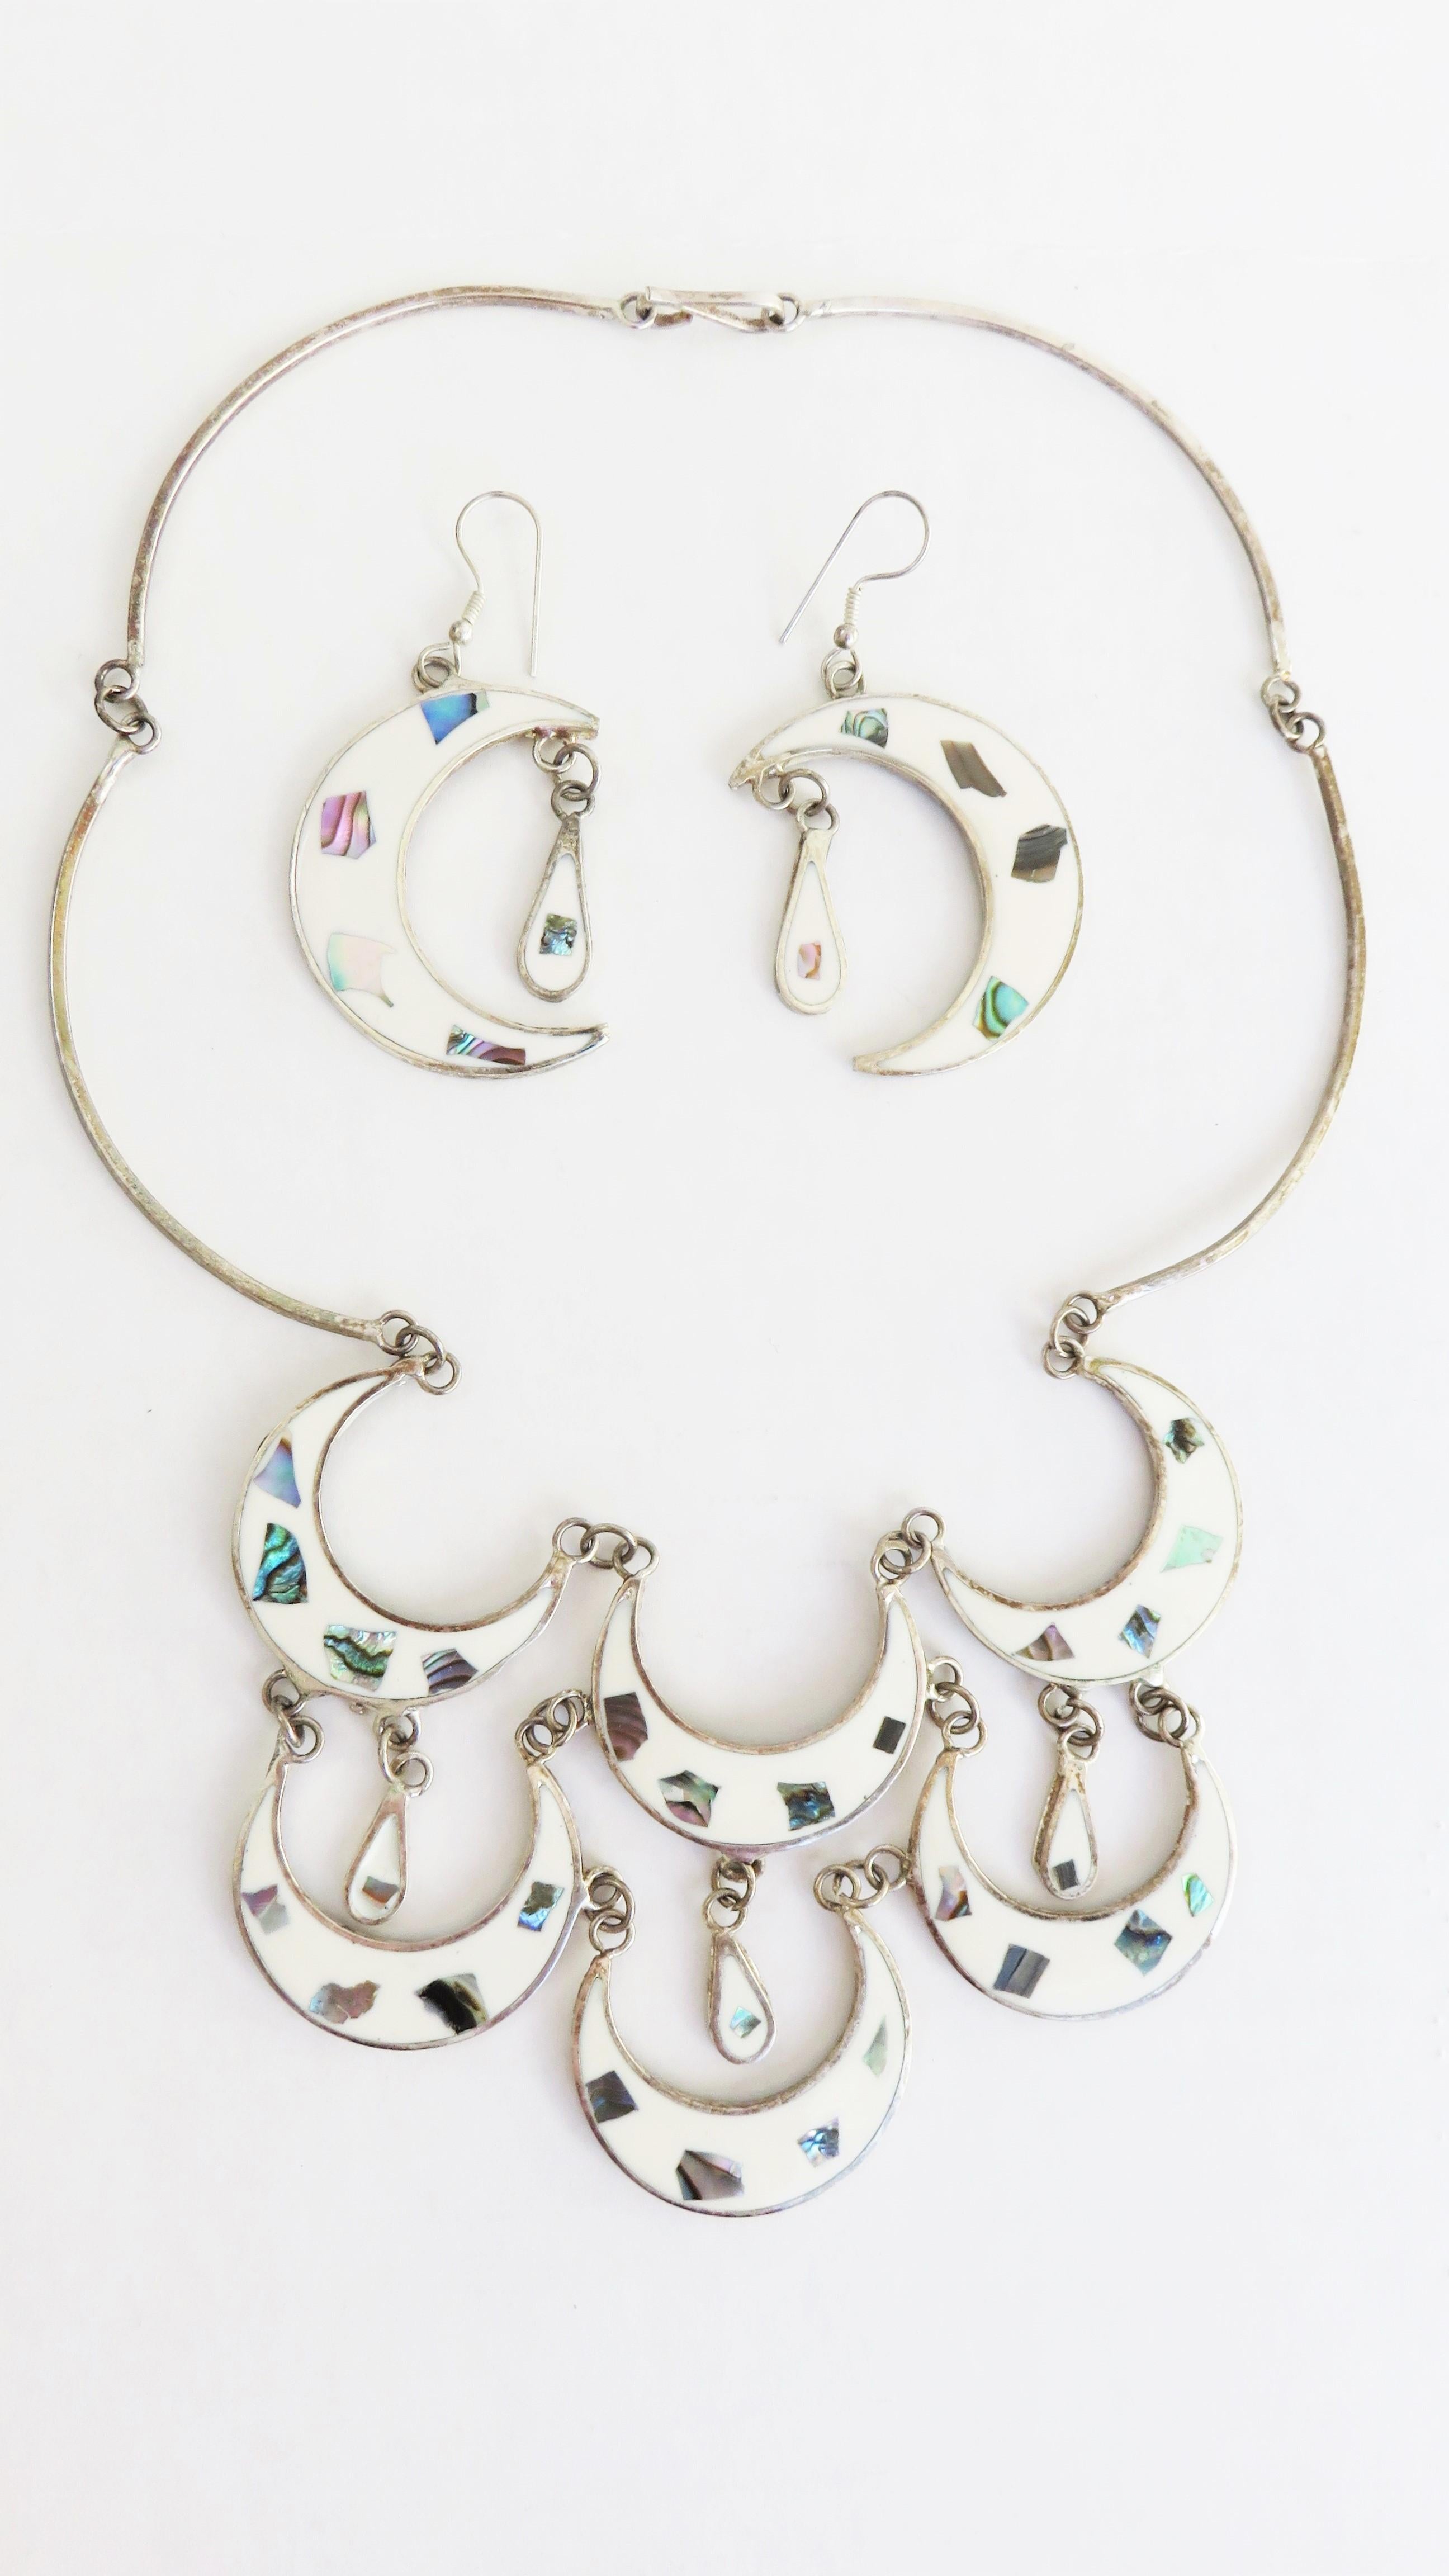 Ein sehr hübsches Halsketten- und Ohrring-Set mit eingelegter Abalone in weißer Emaille.  6 Halbmonde aus weißem Emaille mit Abalone-Einlagen und 3 Tropfen bilden den vorderen Teil des Halsbandes, der durch Glieder mit einem Hakenverschluss auf der